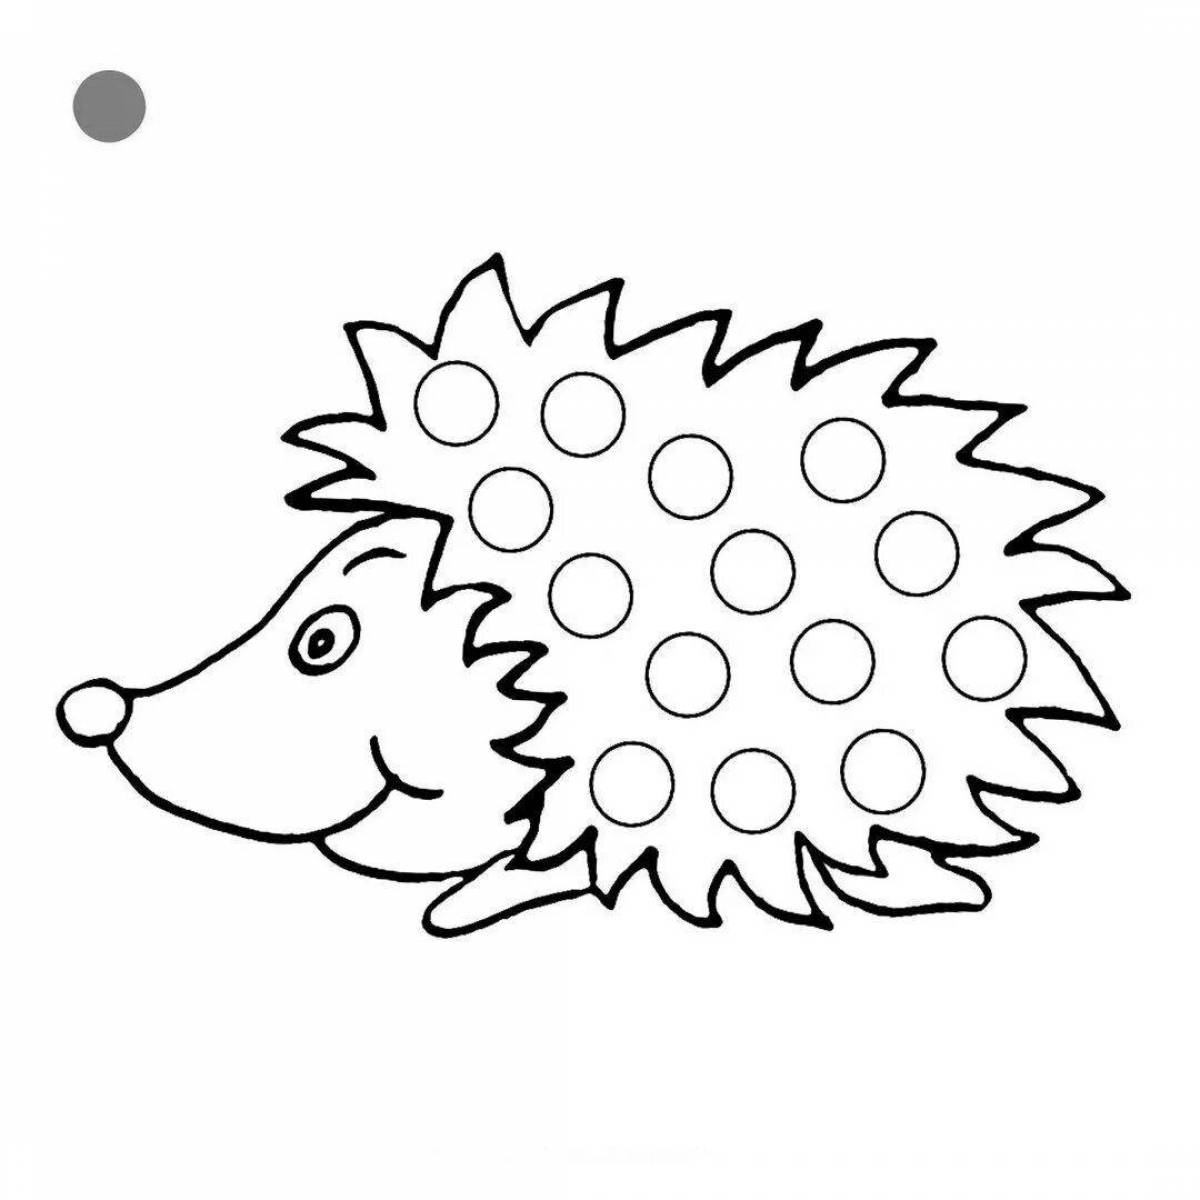 Playful coloring hedgehog